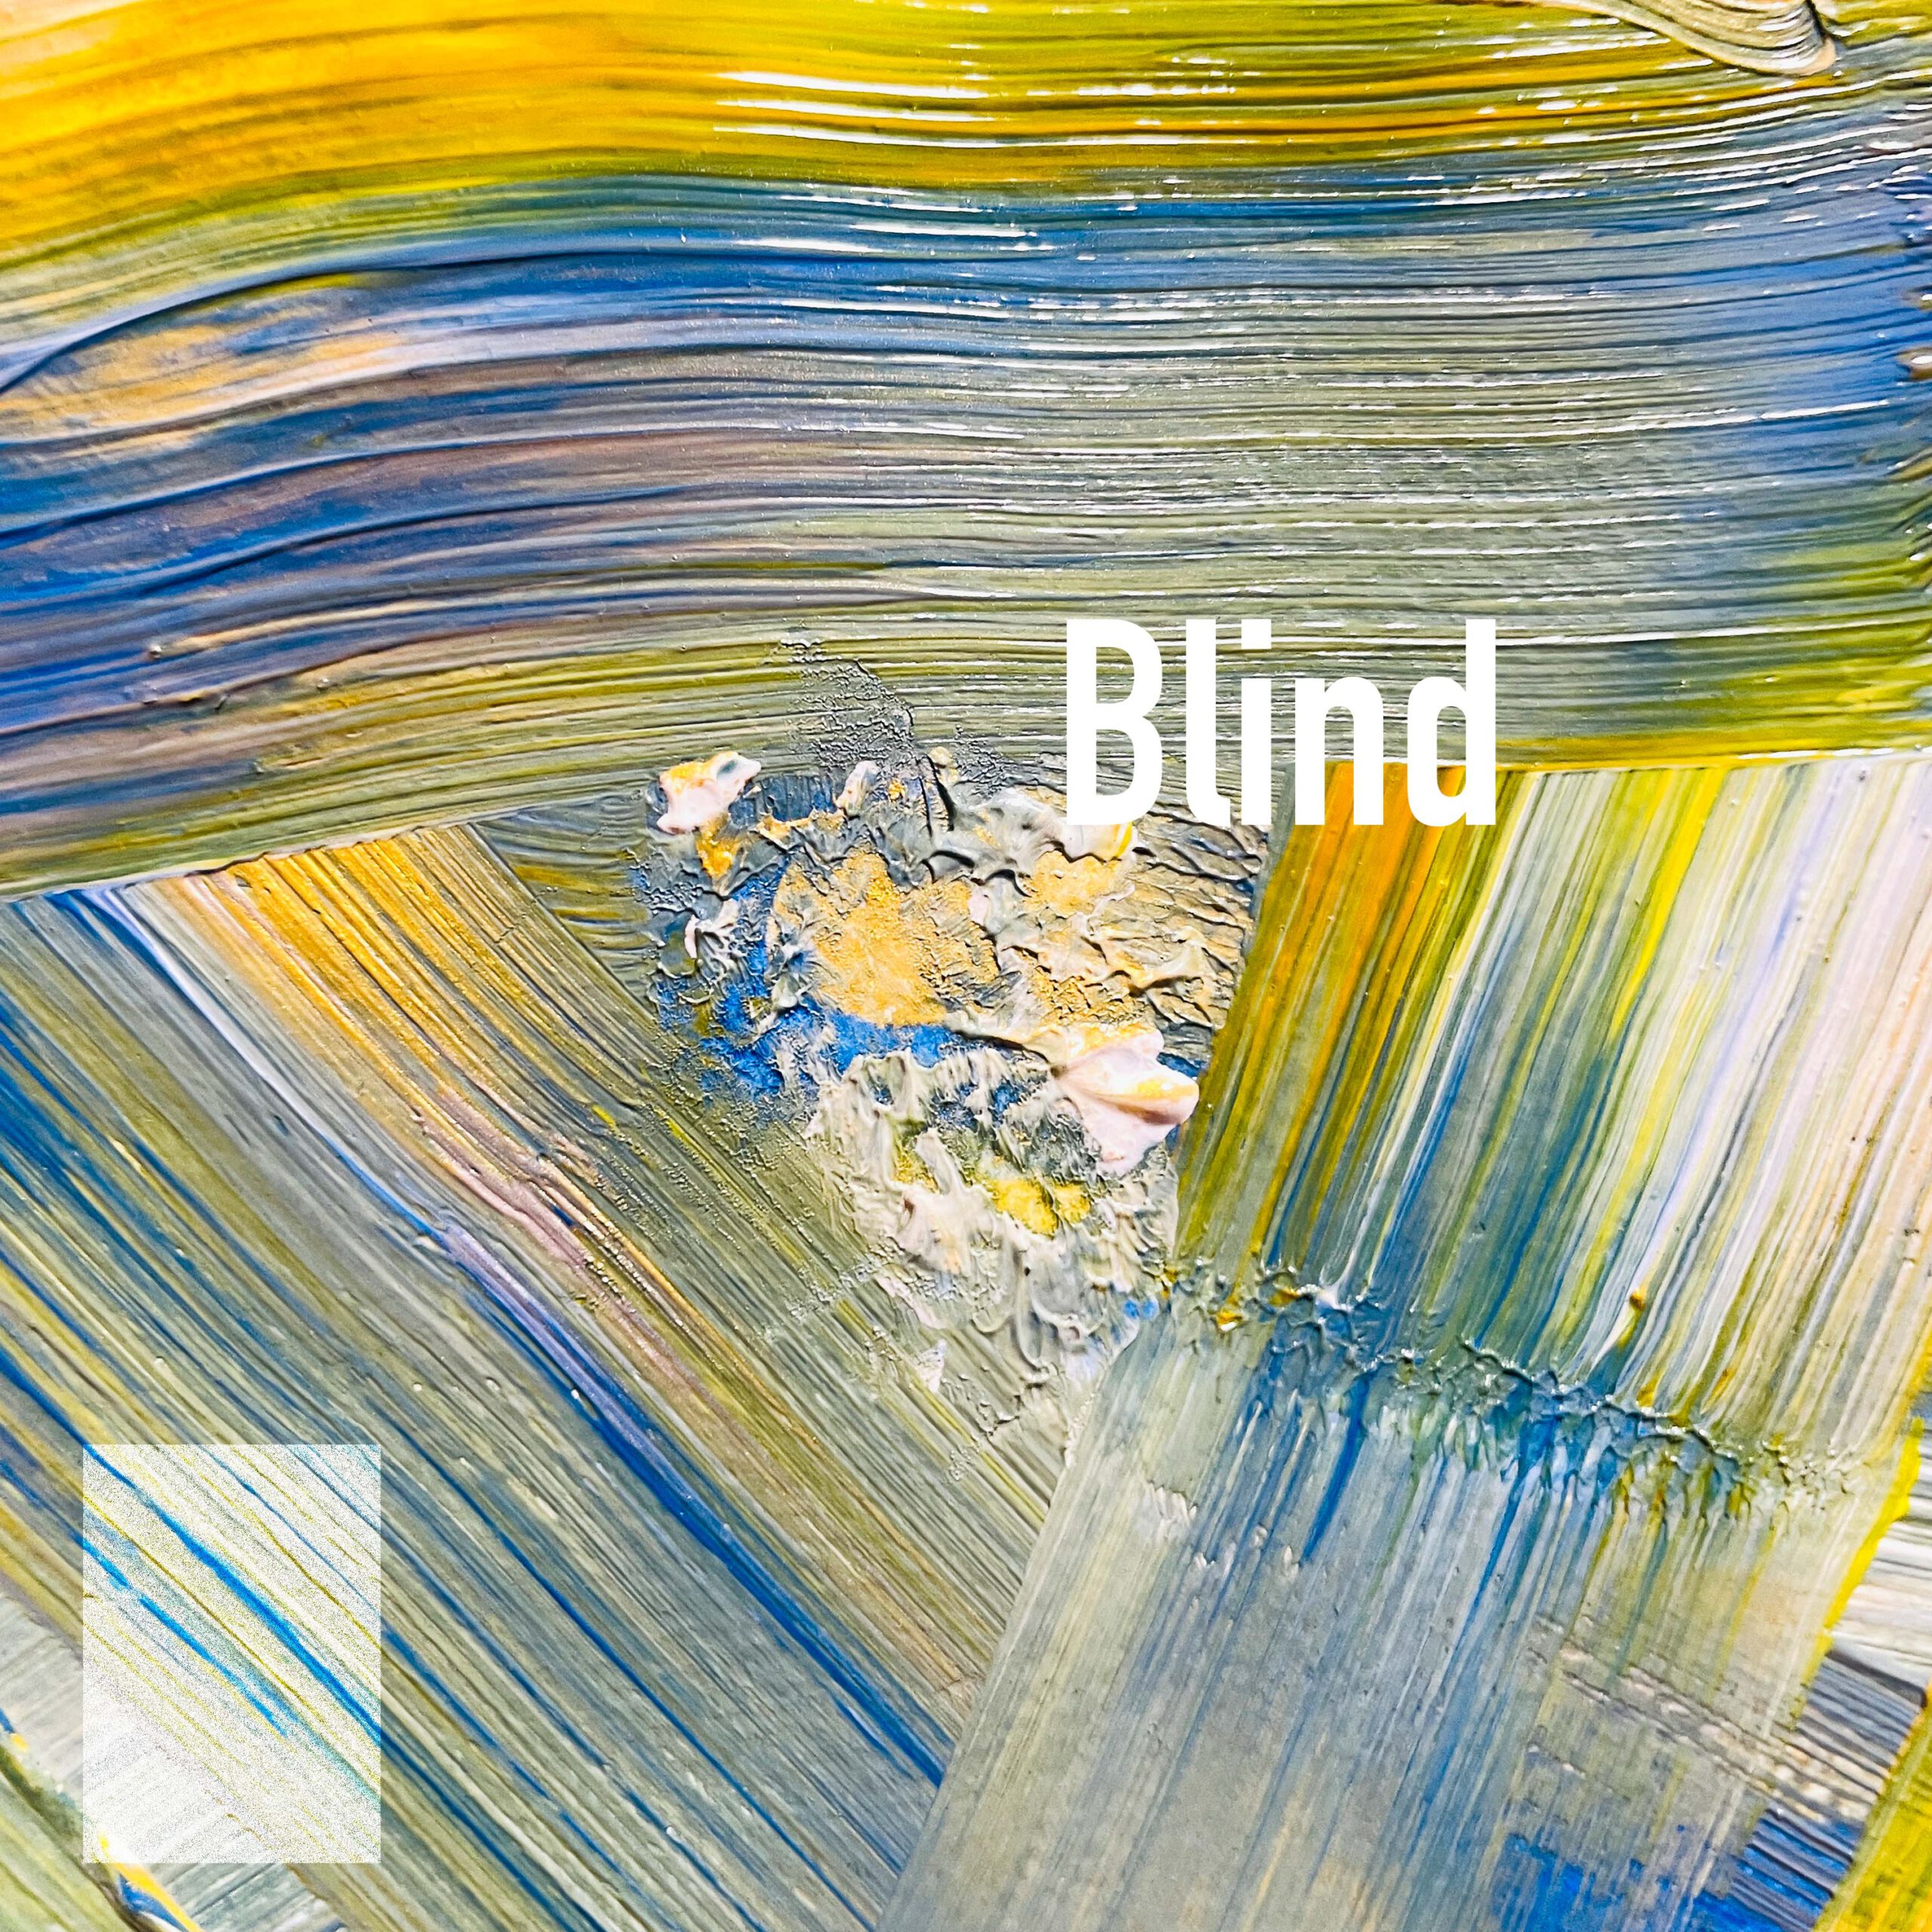 1st Album “Blind”